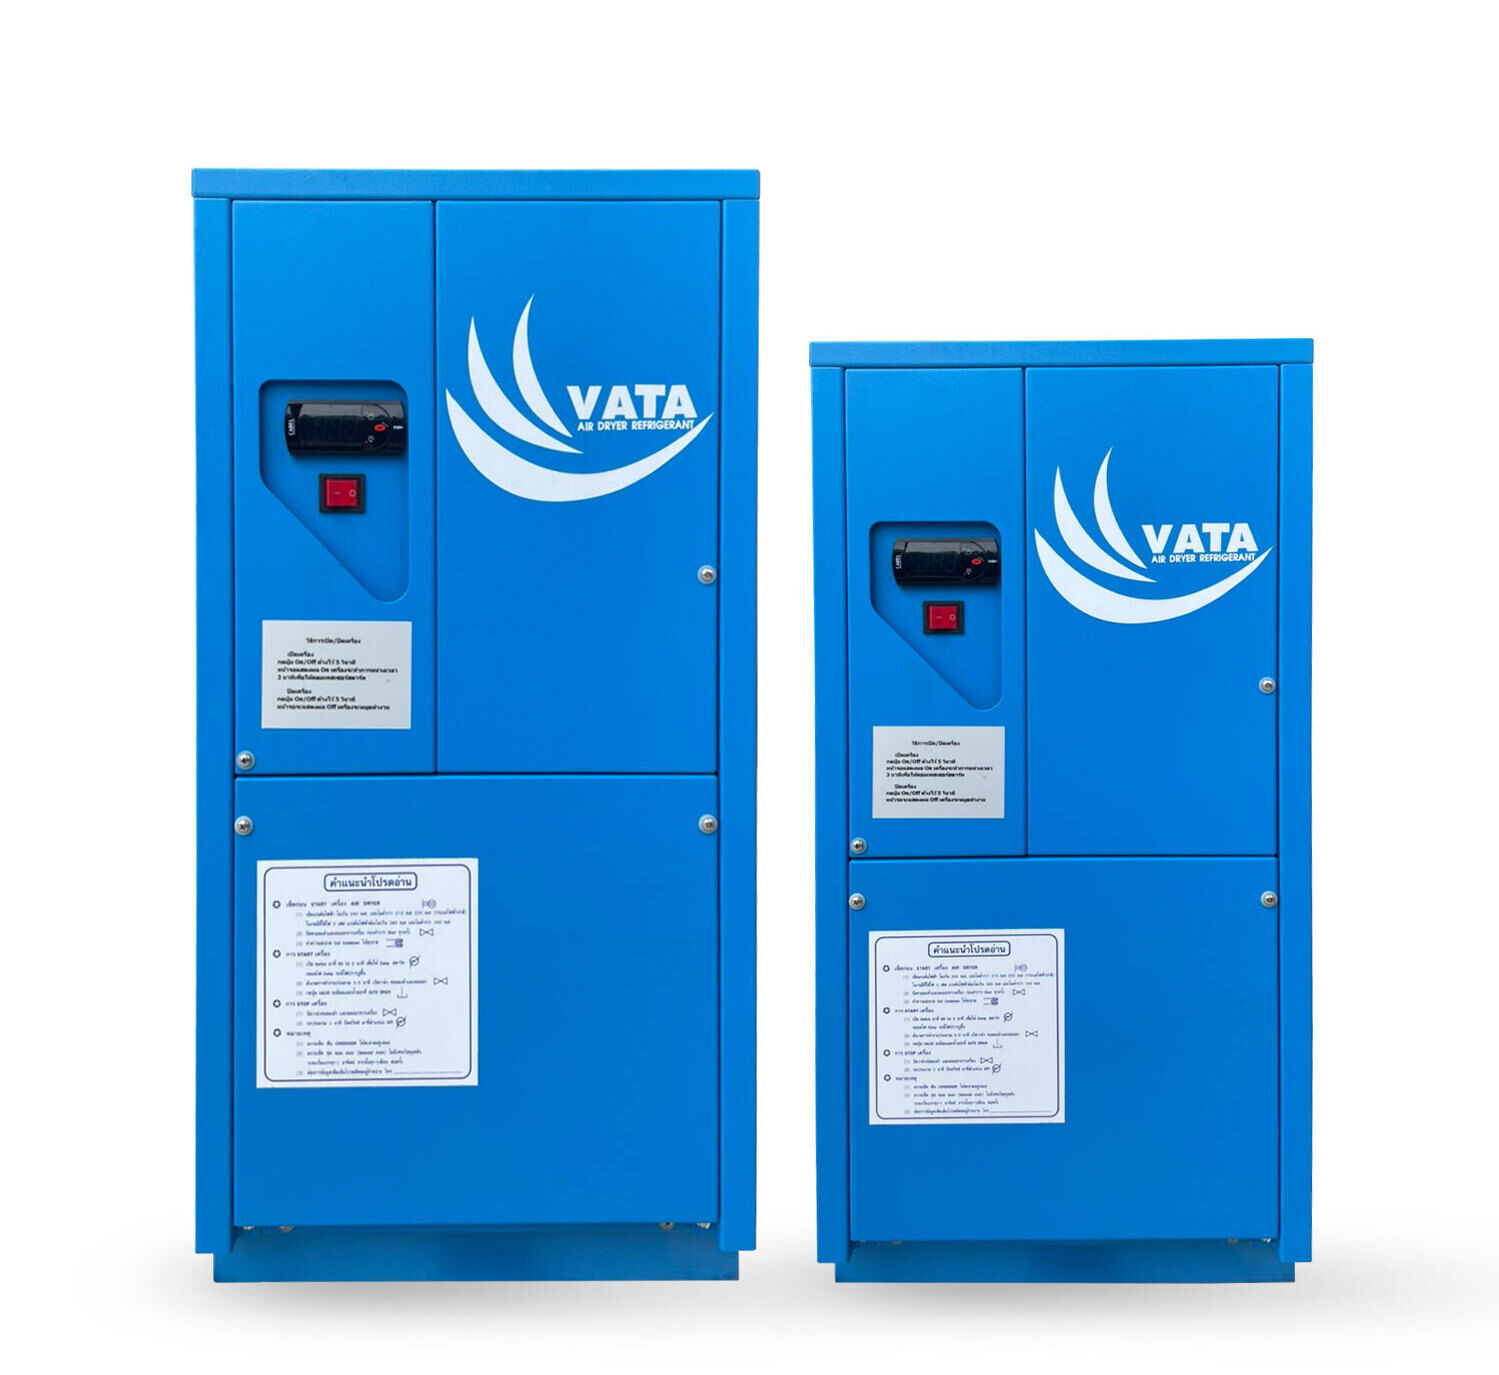 จำหน่าย เครื่องทำลมแห้ง Refrigerated Air Dryer Model : CDK เครื่องทำลมแห้งแบบใช้น้ำยาทำความเย็นในระบบลมอัด รับประกัน 1 ปี พร้อมบริการดูแลหลังการขายและอะไหล่ทุกชิ้น จัดส่งฟรีกรุงเทพปริมณฑล